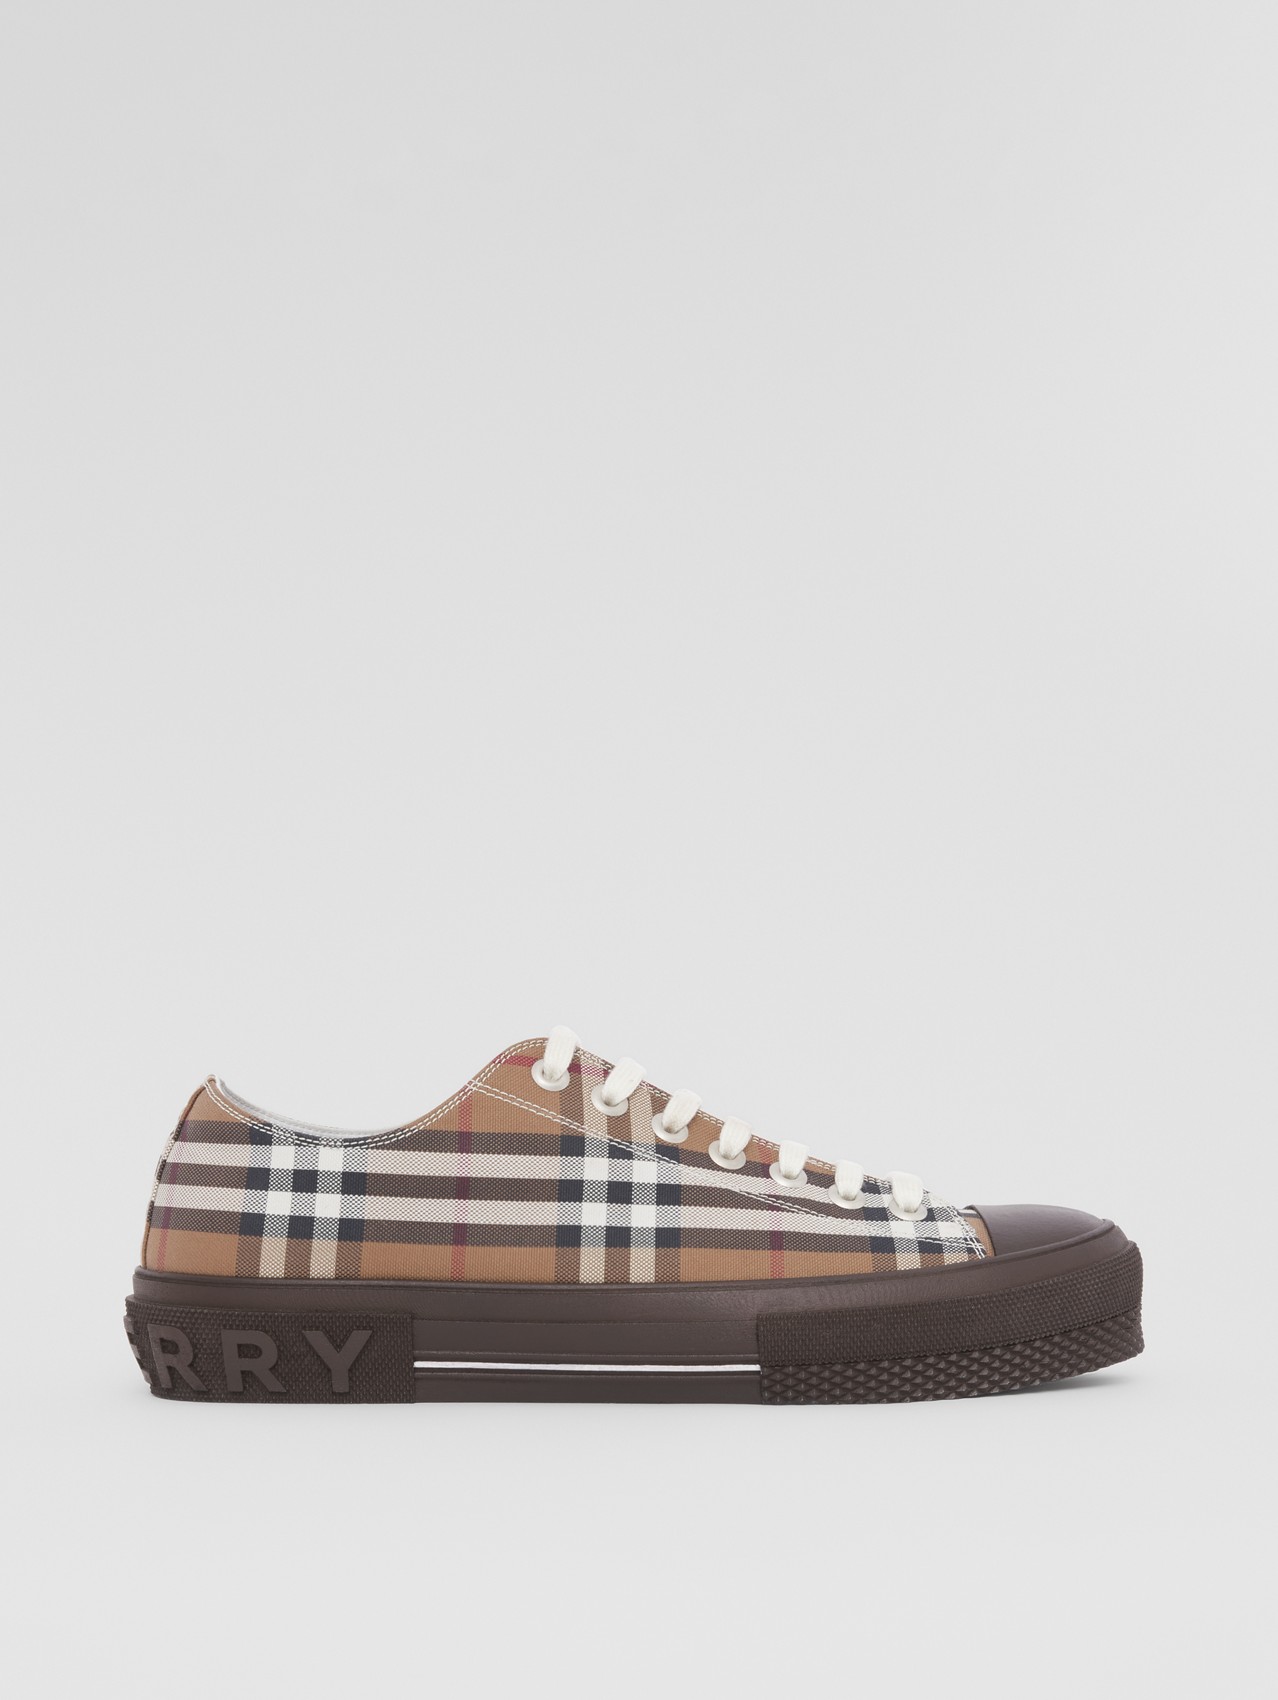 Baumwoll-Sneaker mit Vintage Check-Muster (Birkenbraun)